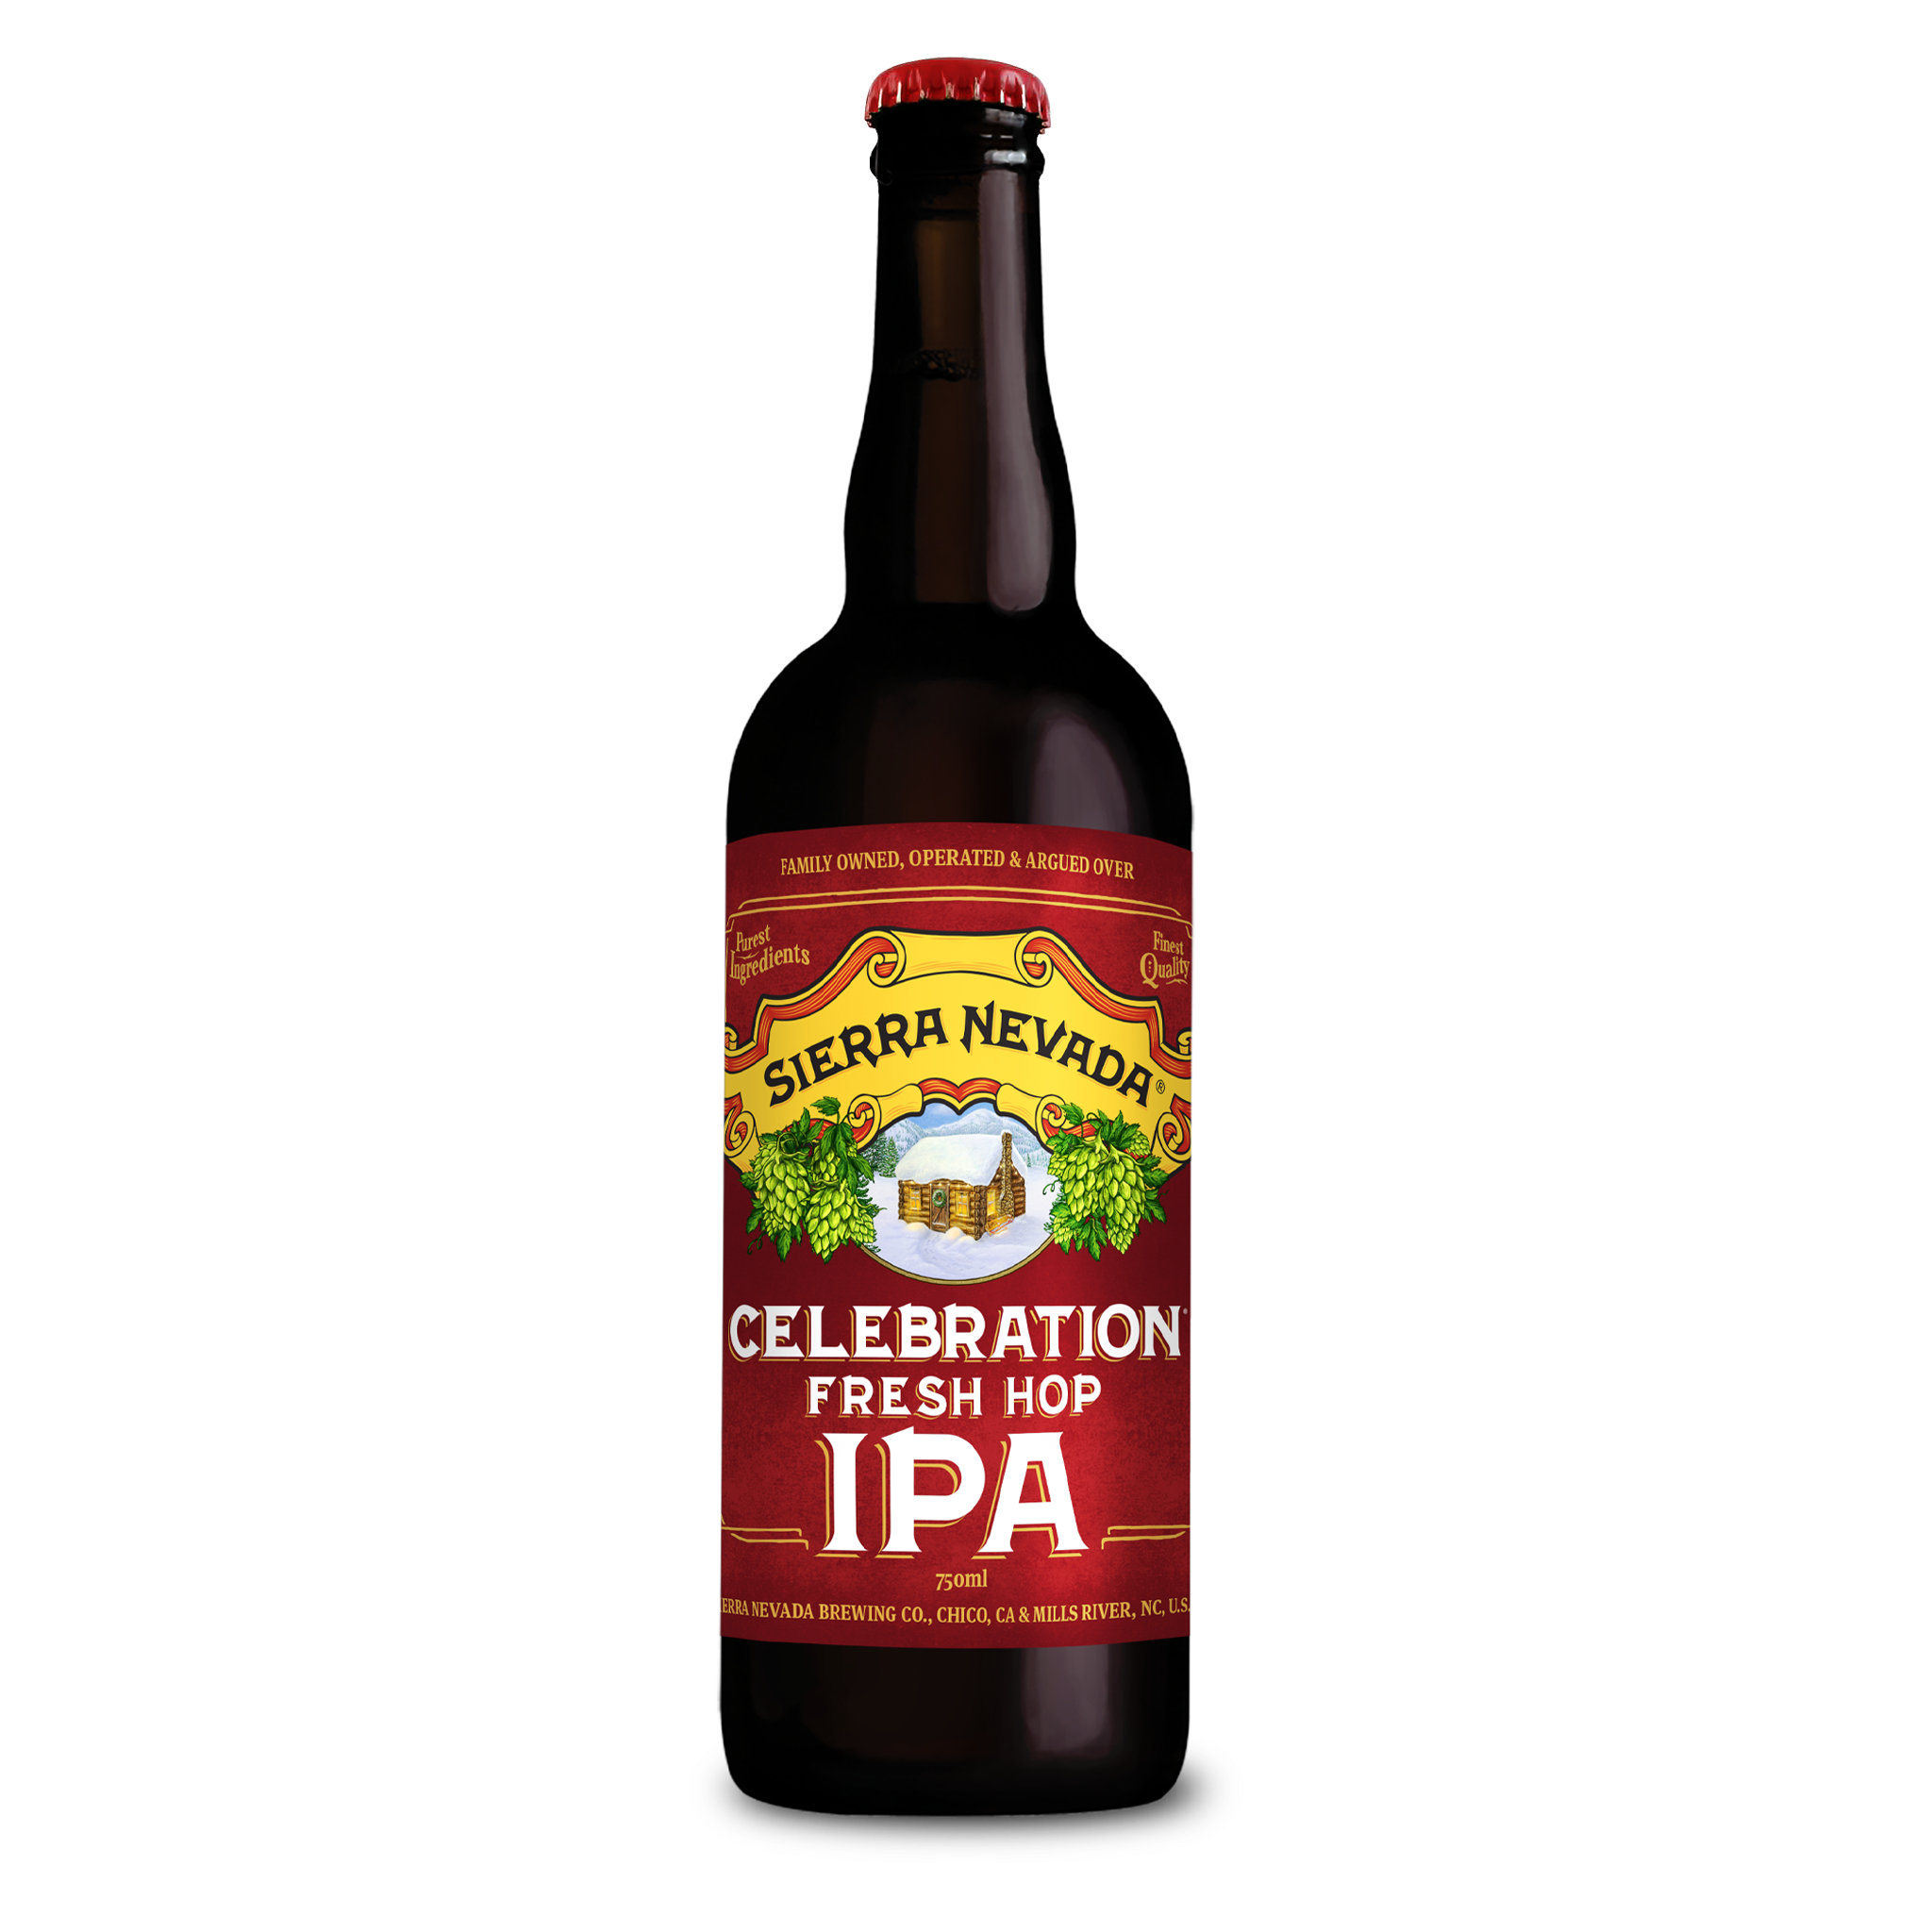 Sierra Nevada Brewing Co. Celebration Fresh Hop IPA 750 ml bottle